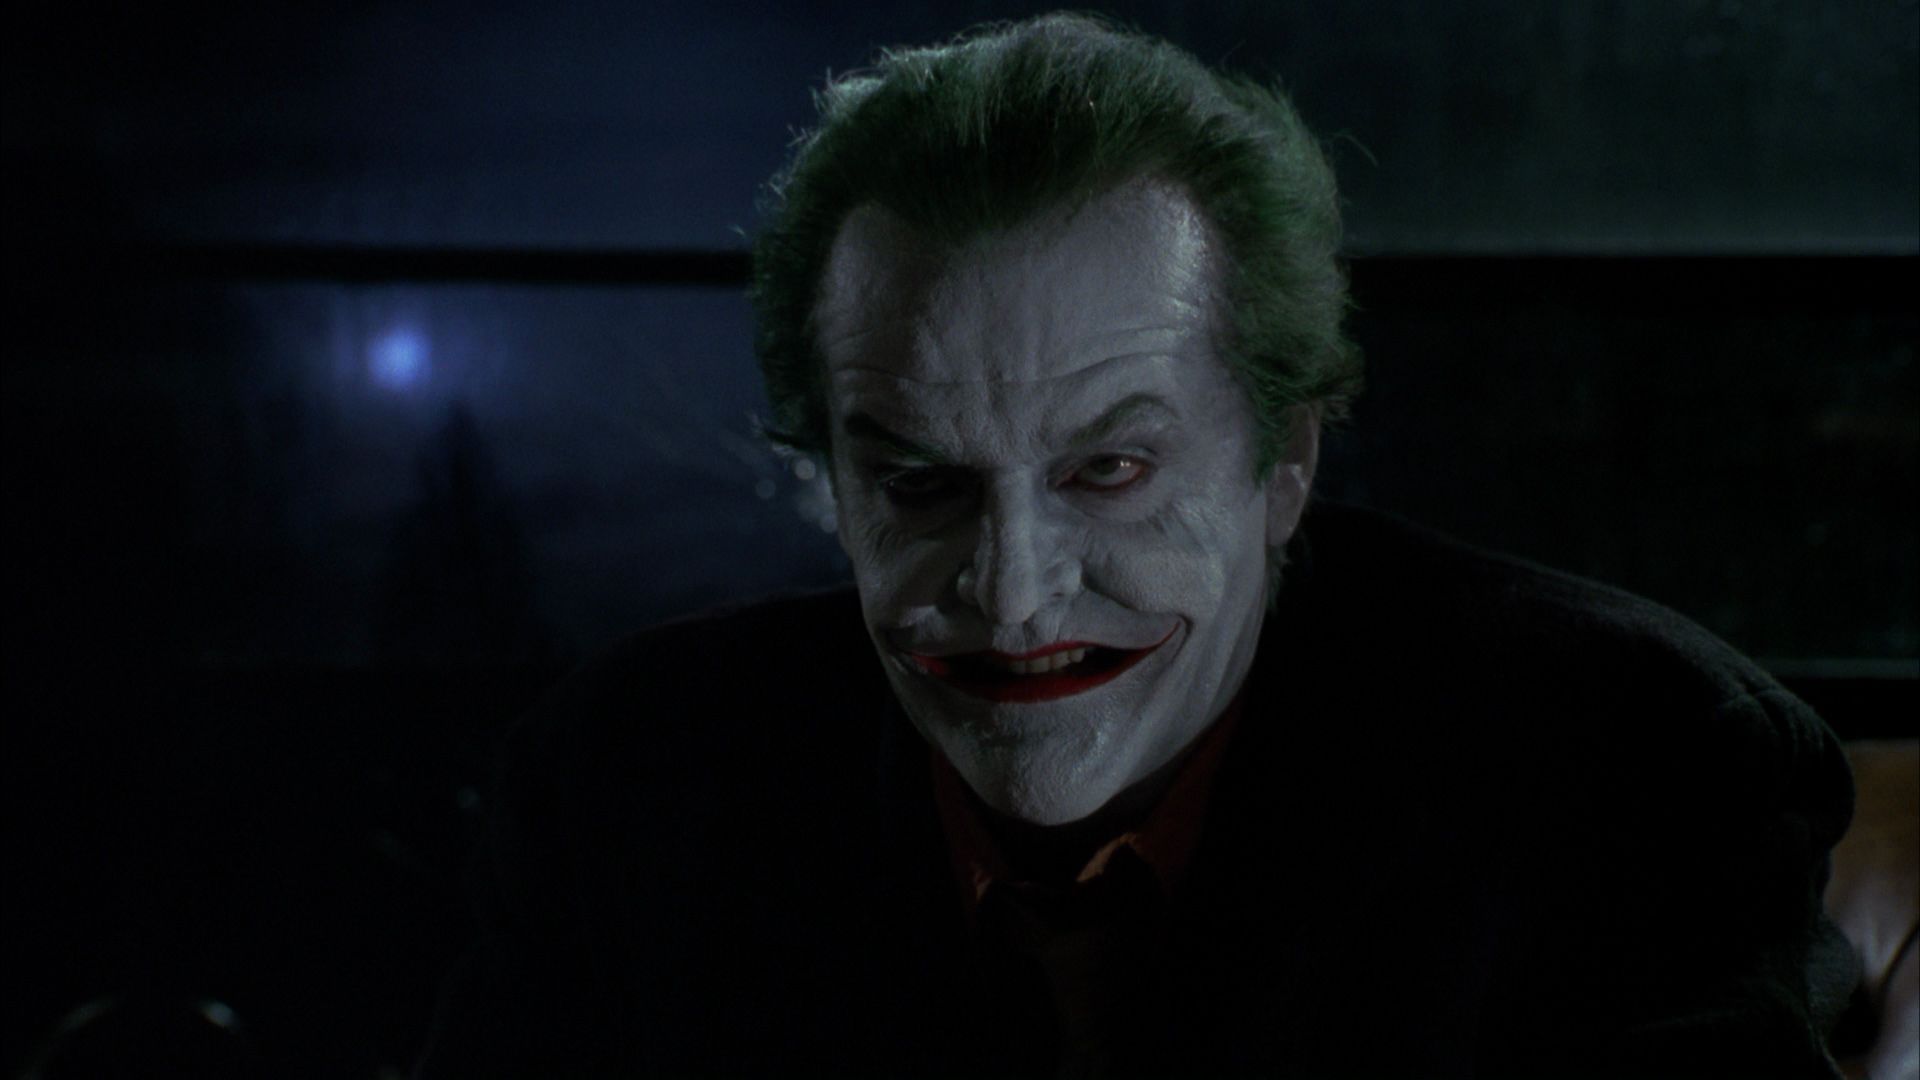 Jack Nicholson Joker wallpaper. Joker, Leto joker, Jared leto joker